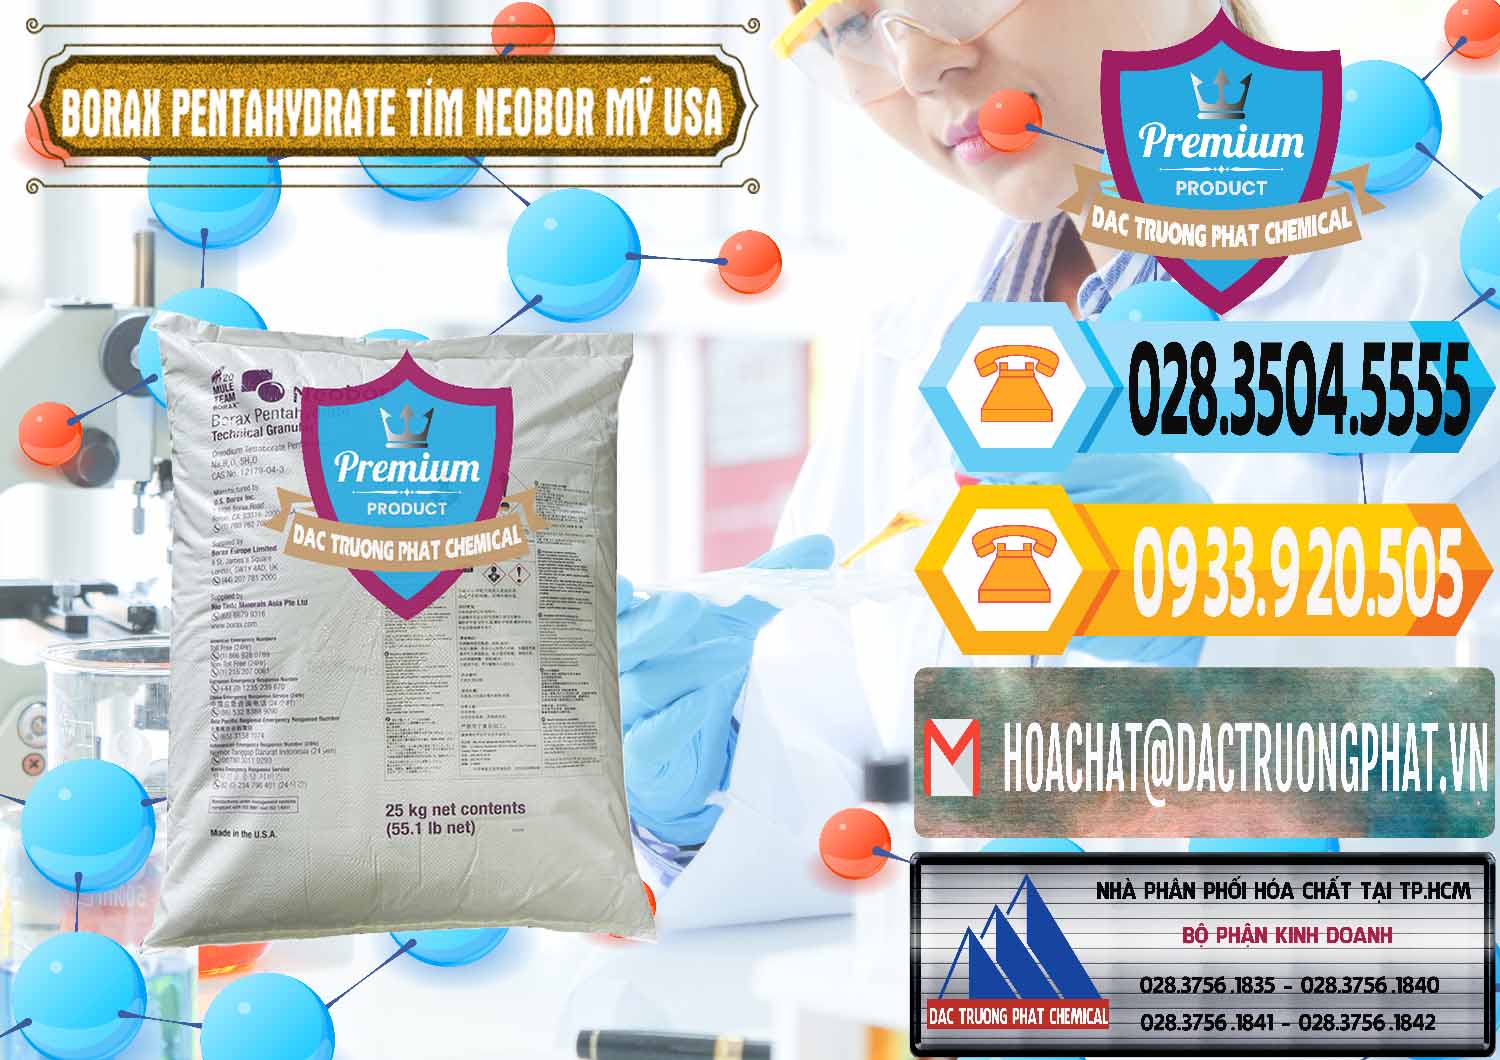 Nơi chuyên nhập khẩu _ bán Borax Pentahydrate Bao Tím Neobor TG Mỹ Usa - 0277 - Nhà cung cấp - bán hóa chất tại TP.HCM - hoachattayrua.net